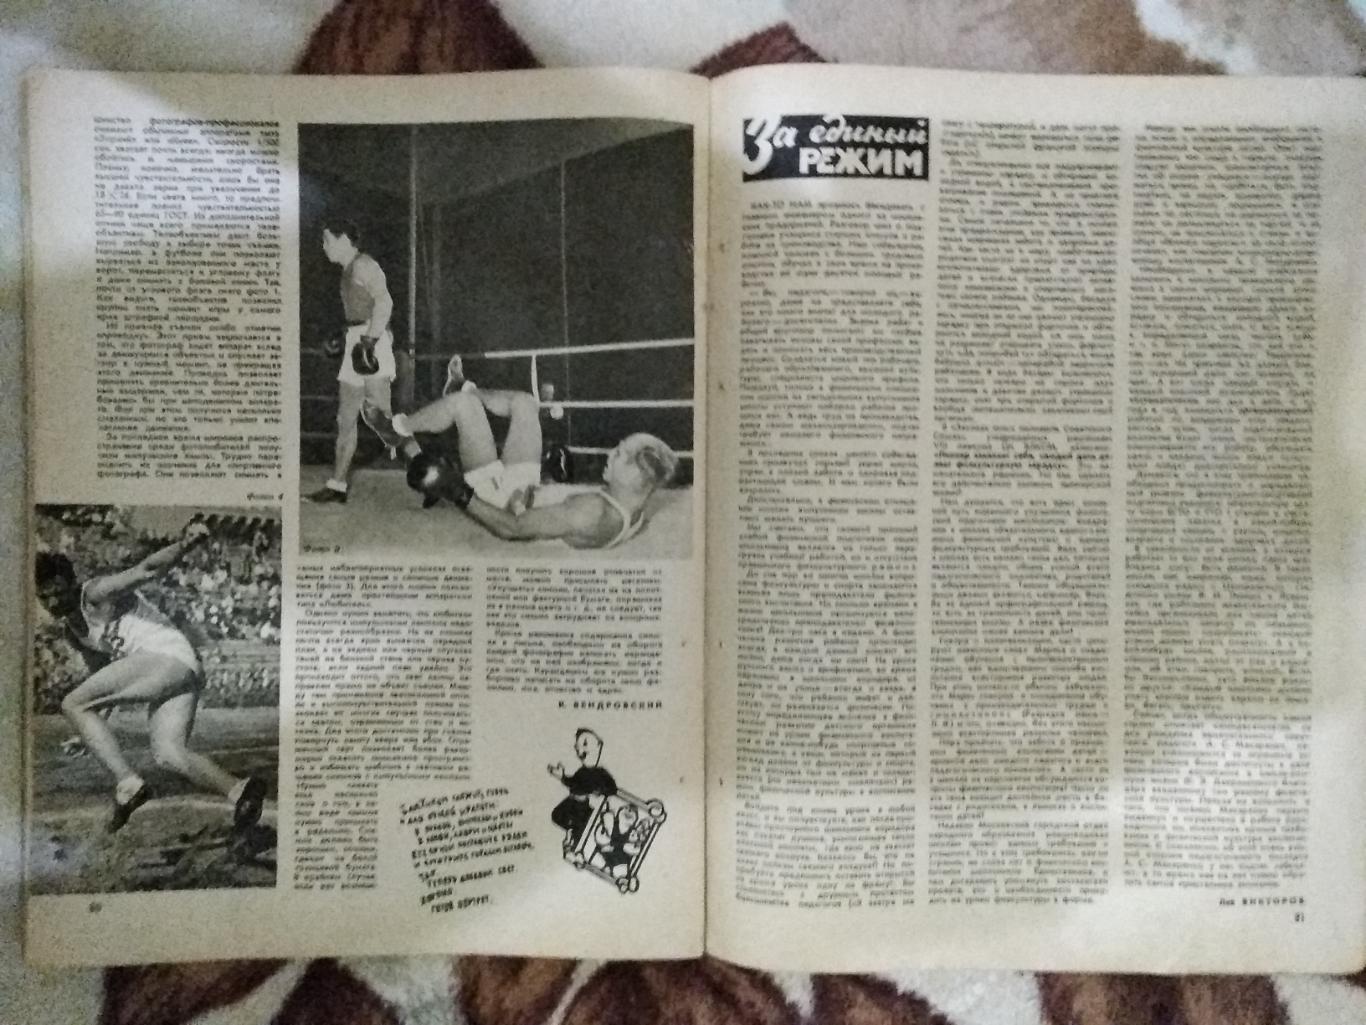 Журнал.Физкультура и спорт № 3 1958 г. (ФиС). 2